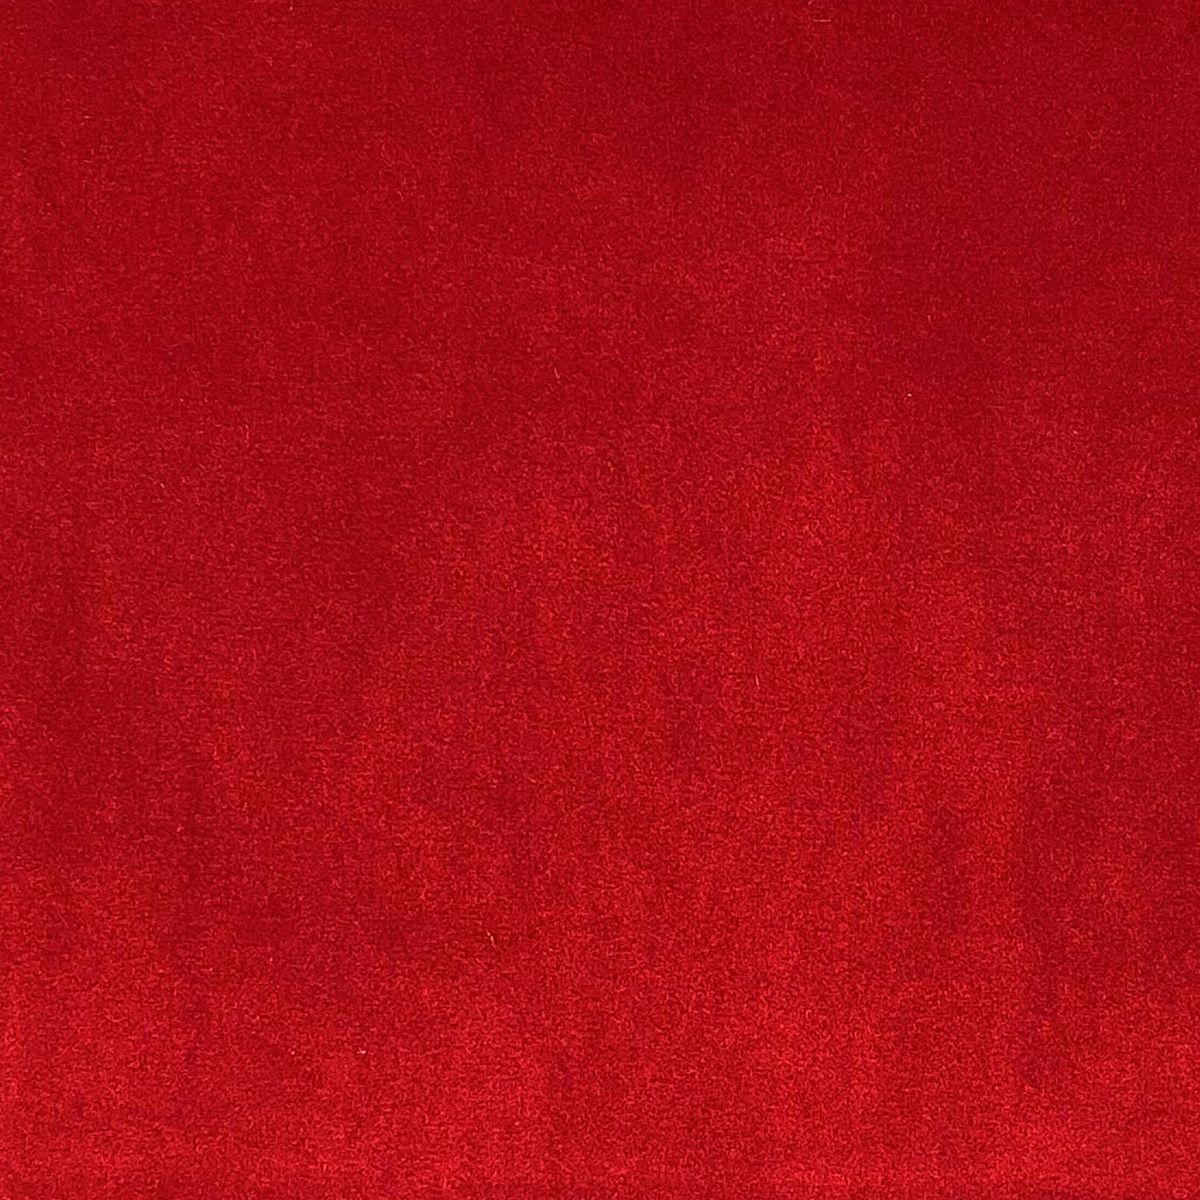 London Scarlet Fabric by Chatham Glyn